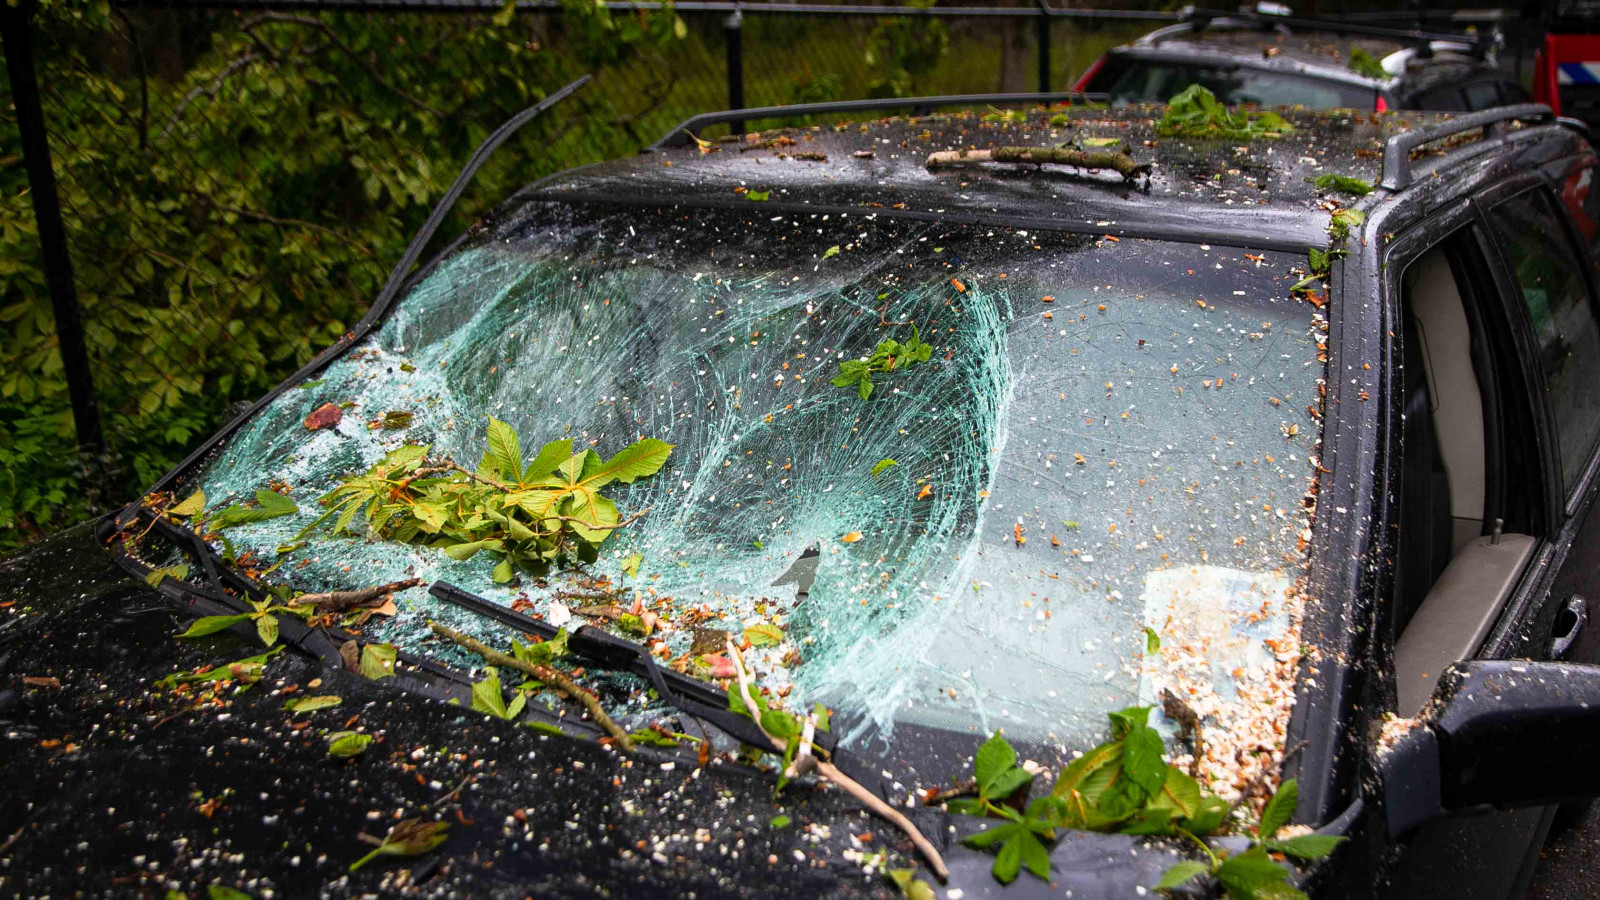 Auto's Bloemendaal bedolven onder omgevallen boom